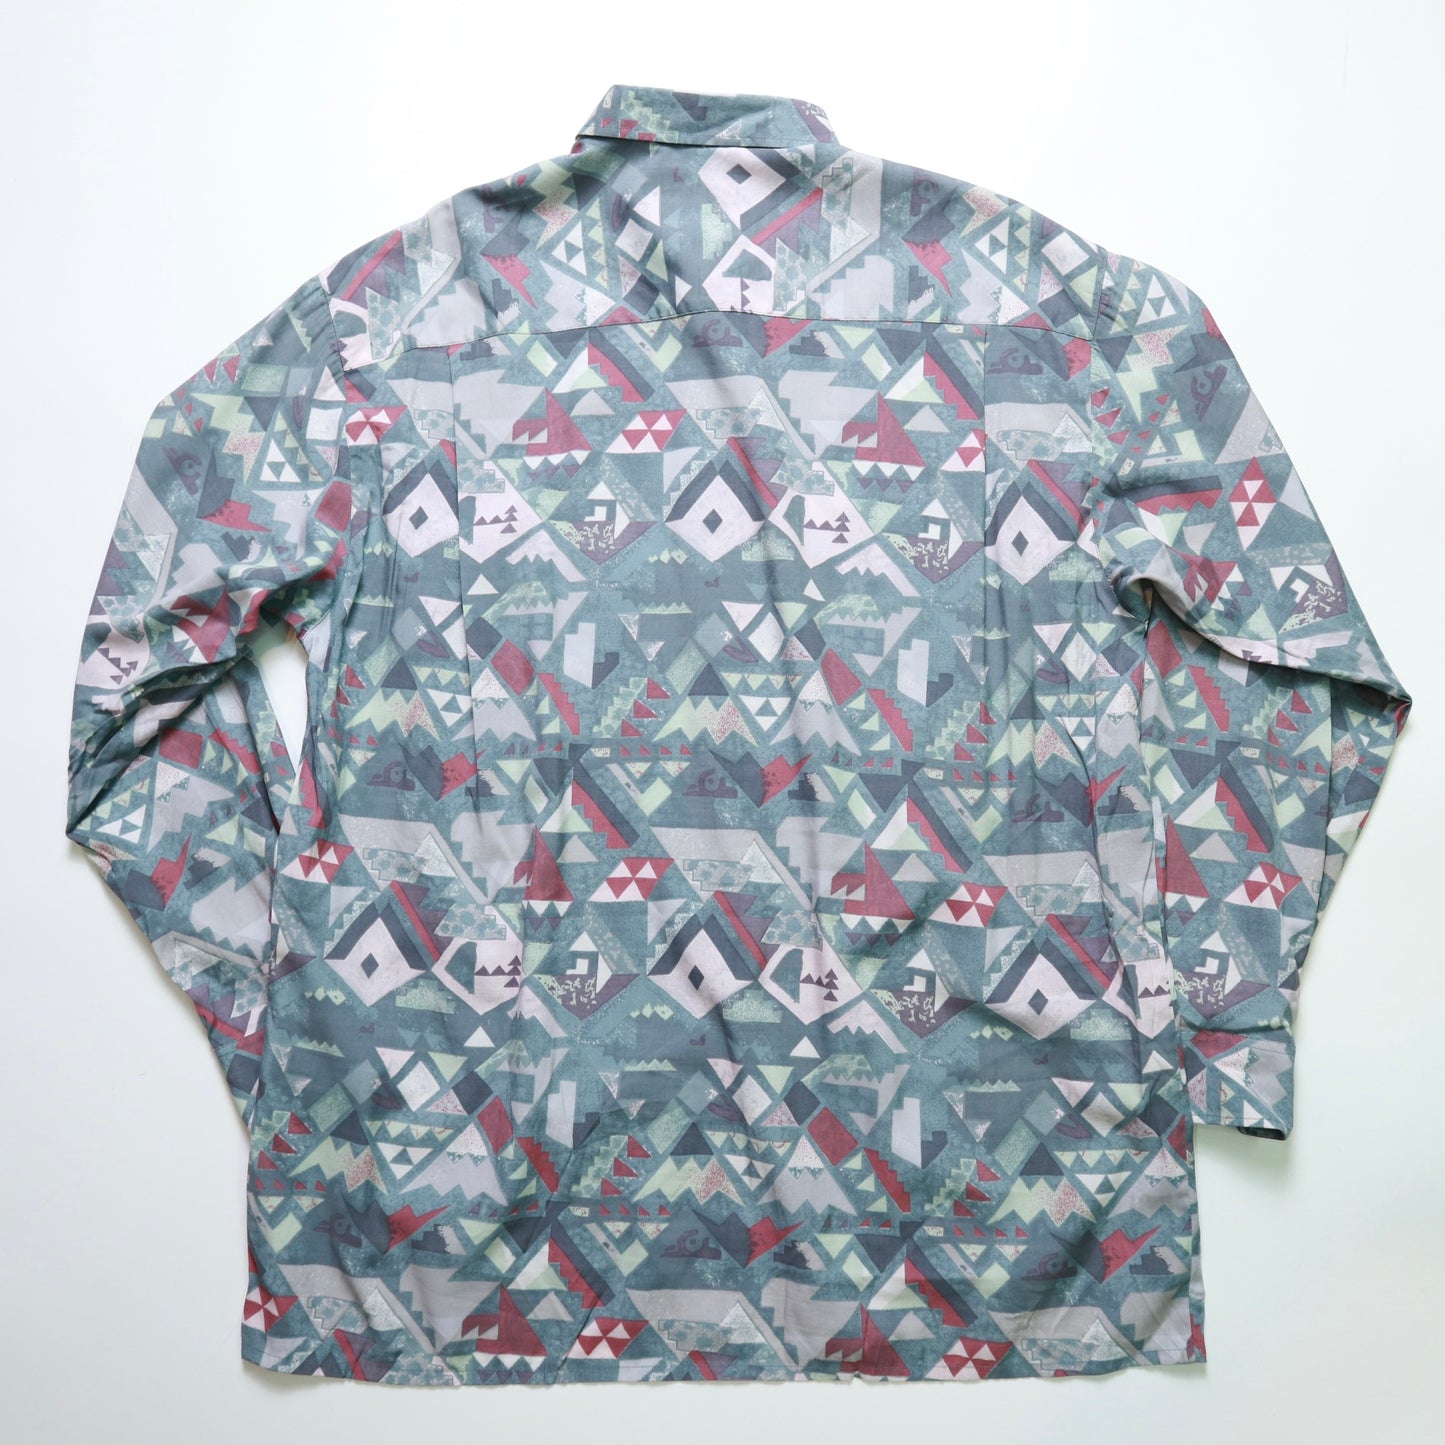 ブルーとグレーの幾何学模様のトーテムシャツ長袖シャツ